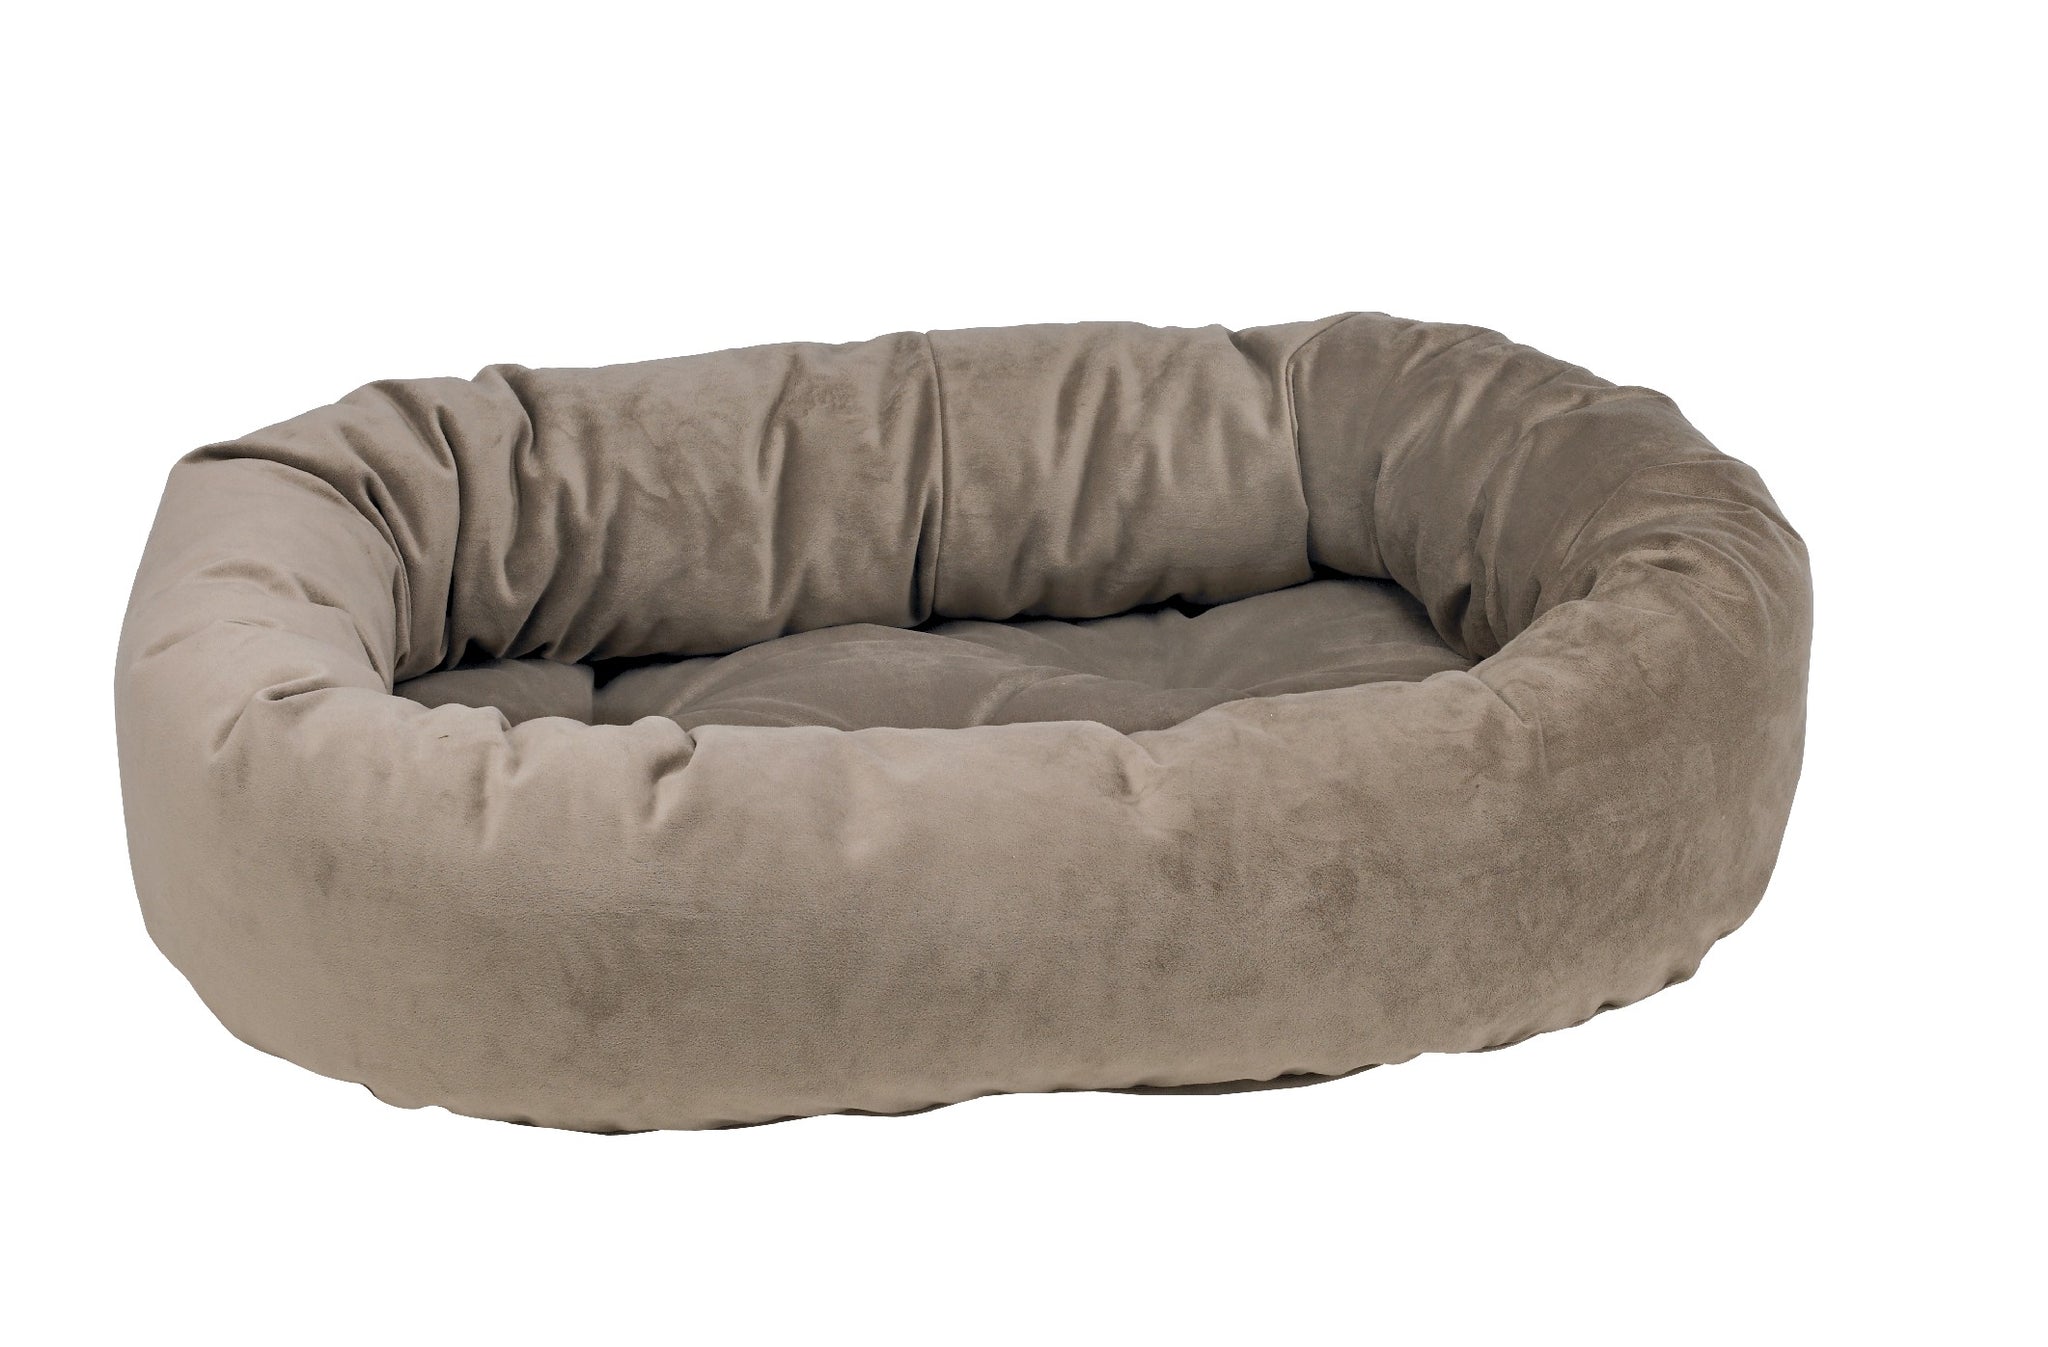 Microvelvet - Donut Bed - Pebble - Dog Bed